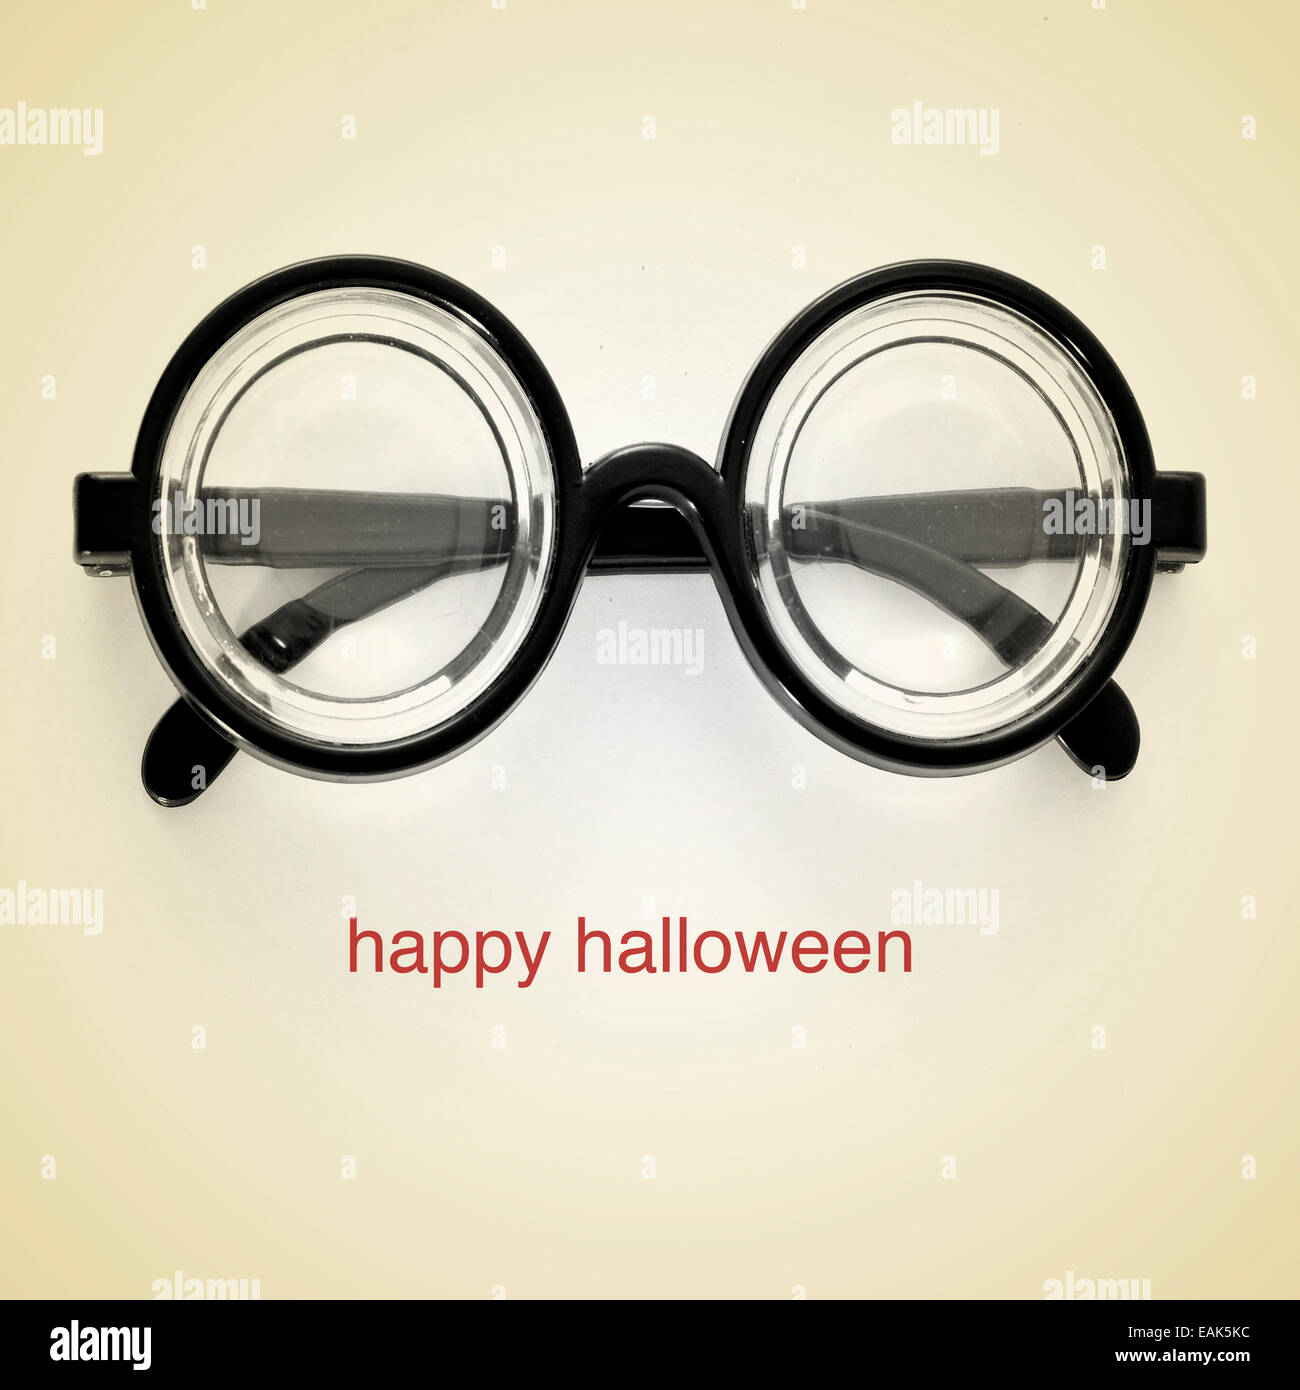 Foto di miopi bicchieri e la frase happy Halloween su uno sfondo beige, con un effetto retrò Foto Stock